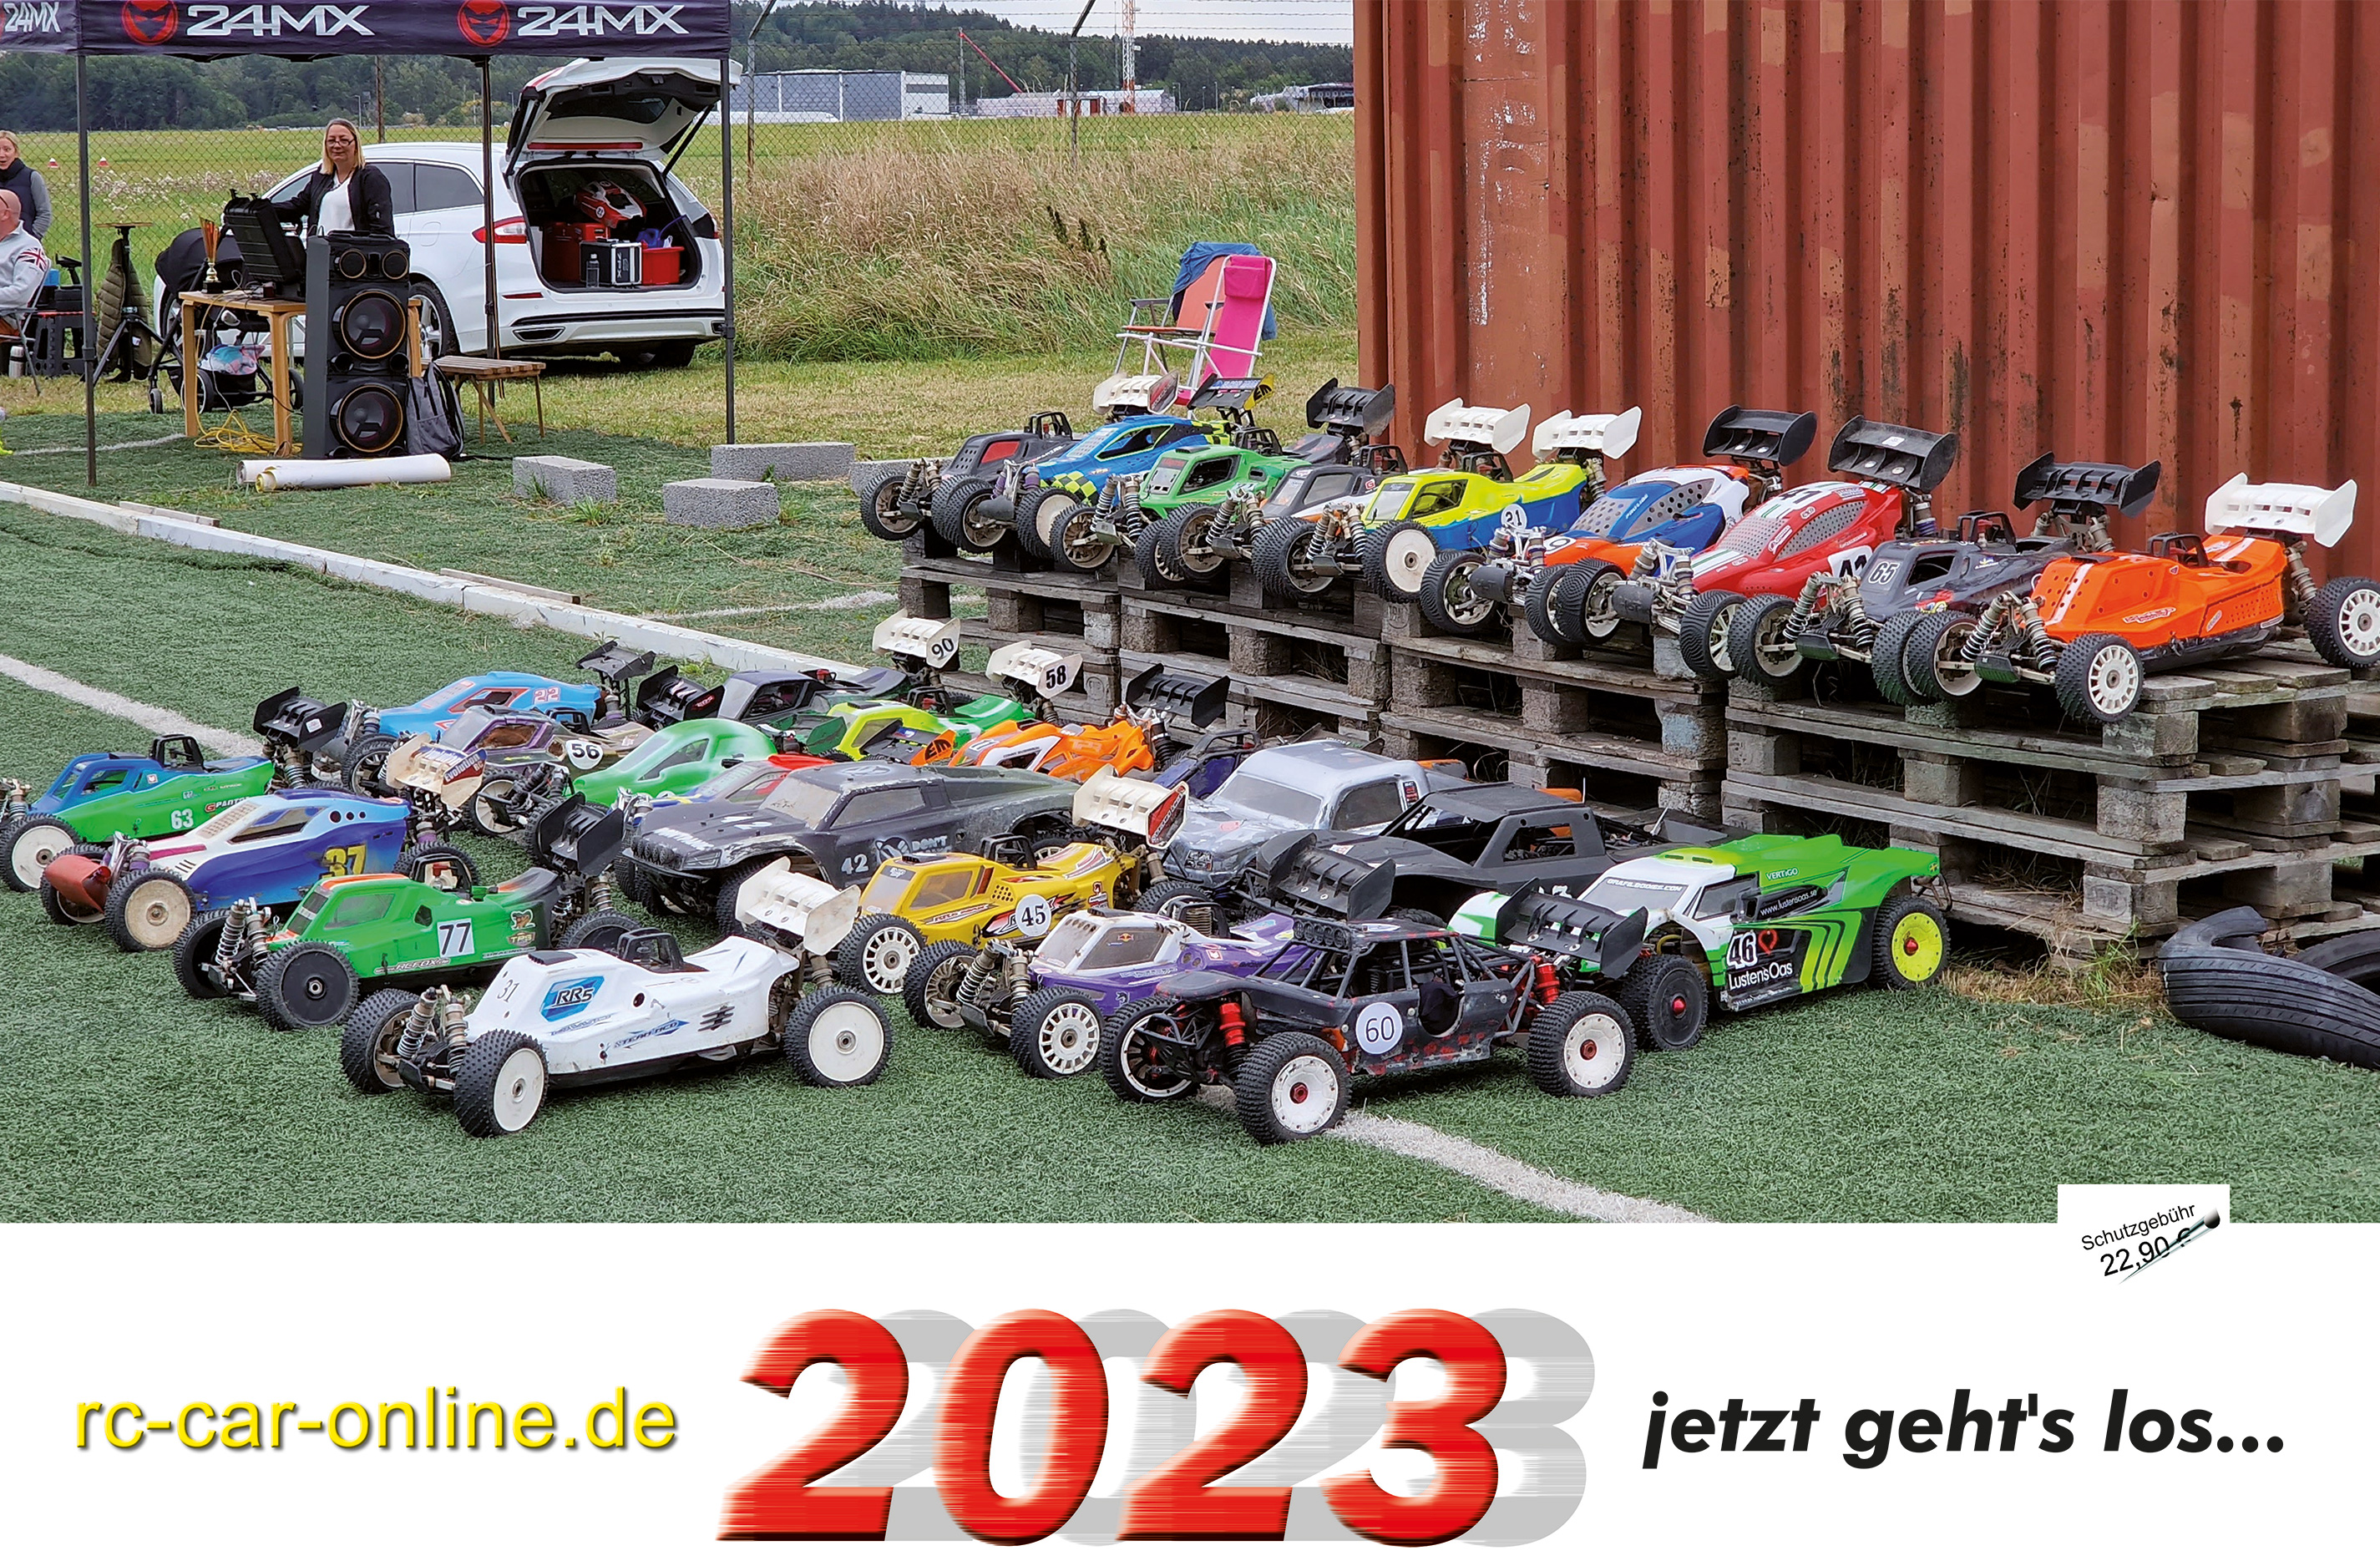 y3100 rc-car-online.de - Kalender 2023